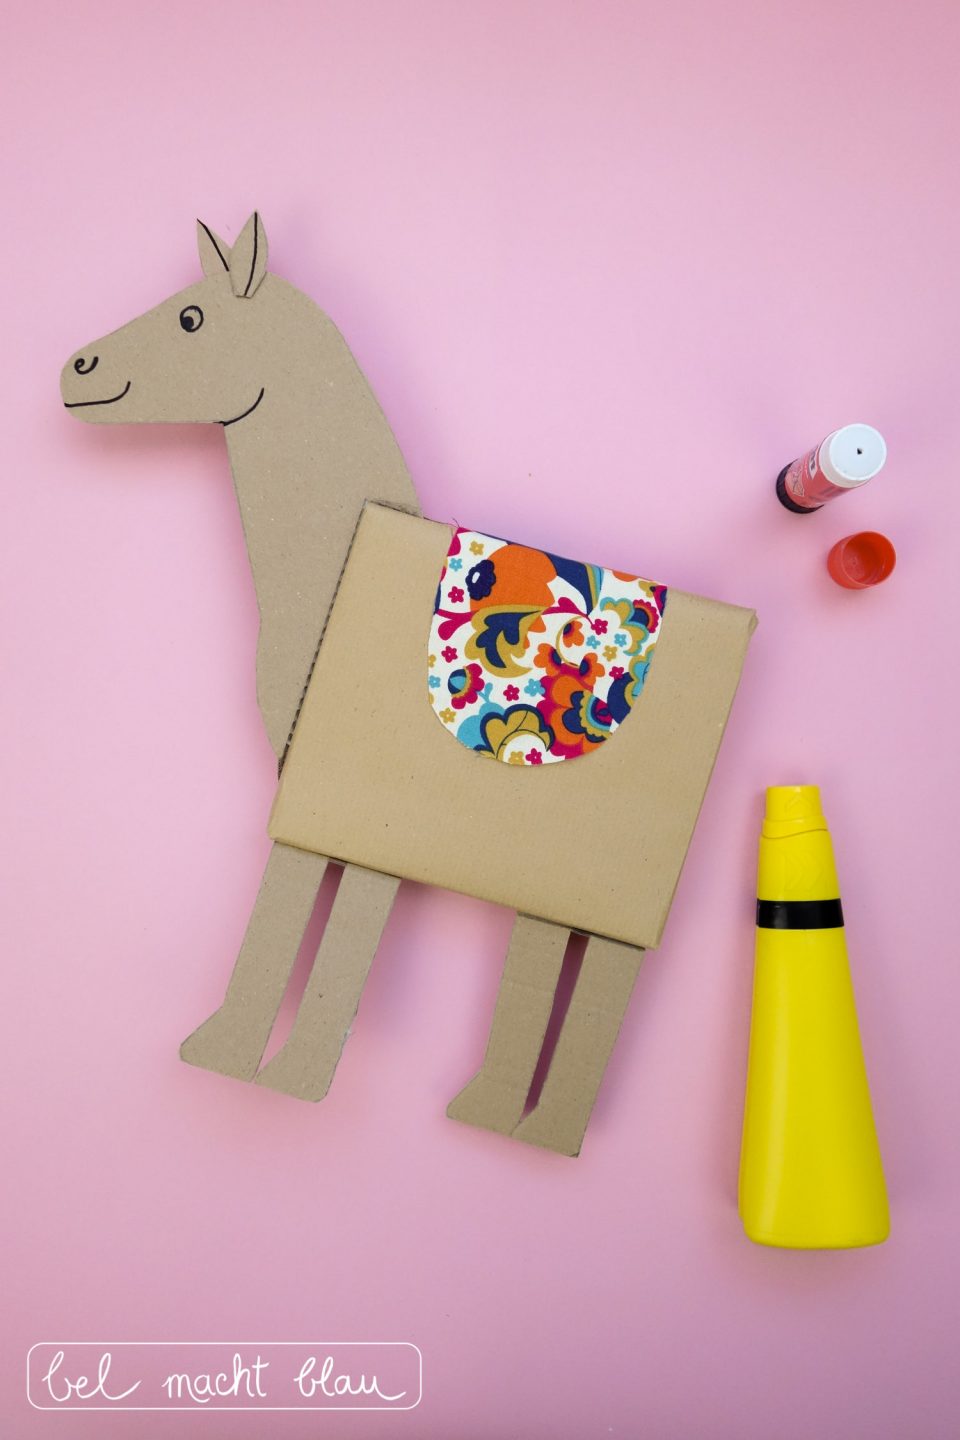 Pferde-Geschenkverpackung basteln: DIY-Anleitung mit Bastelvorlage, Verpackungsidee für den Kindergeburtstag